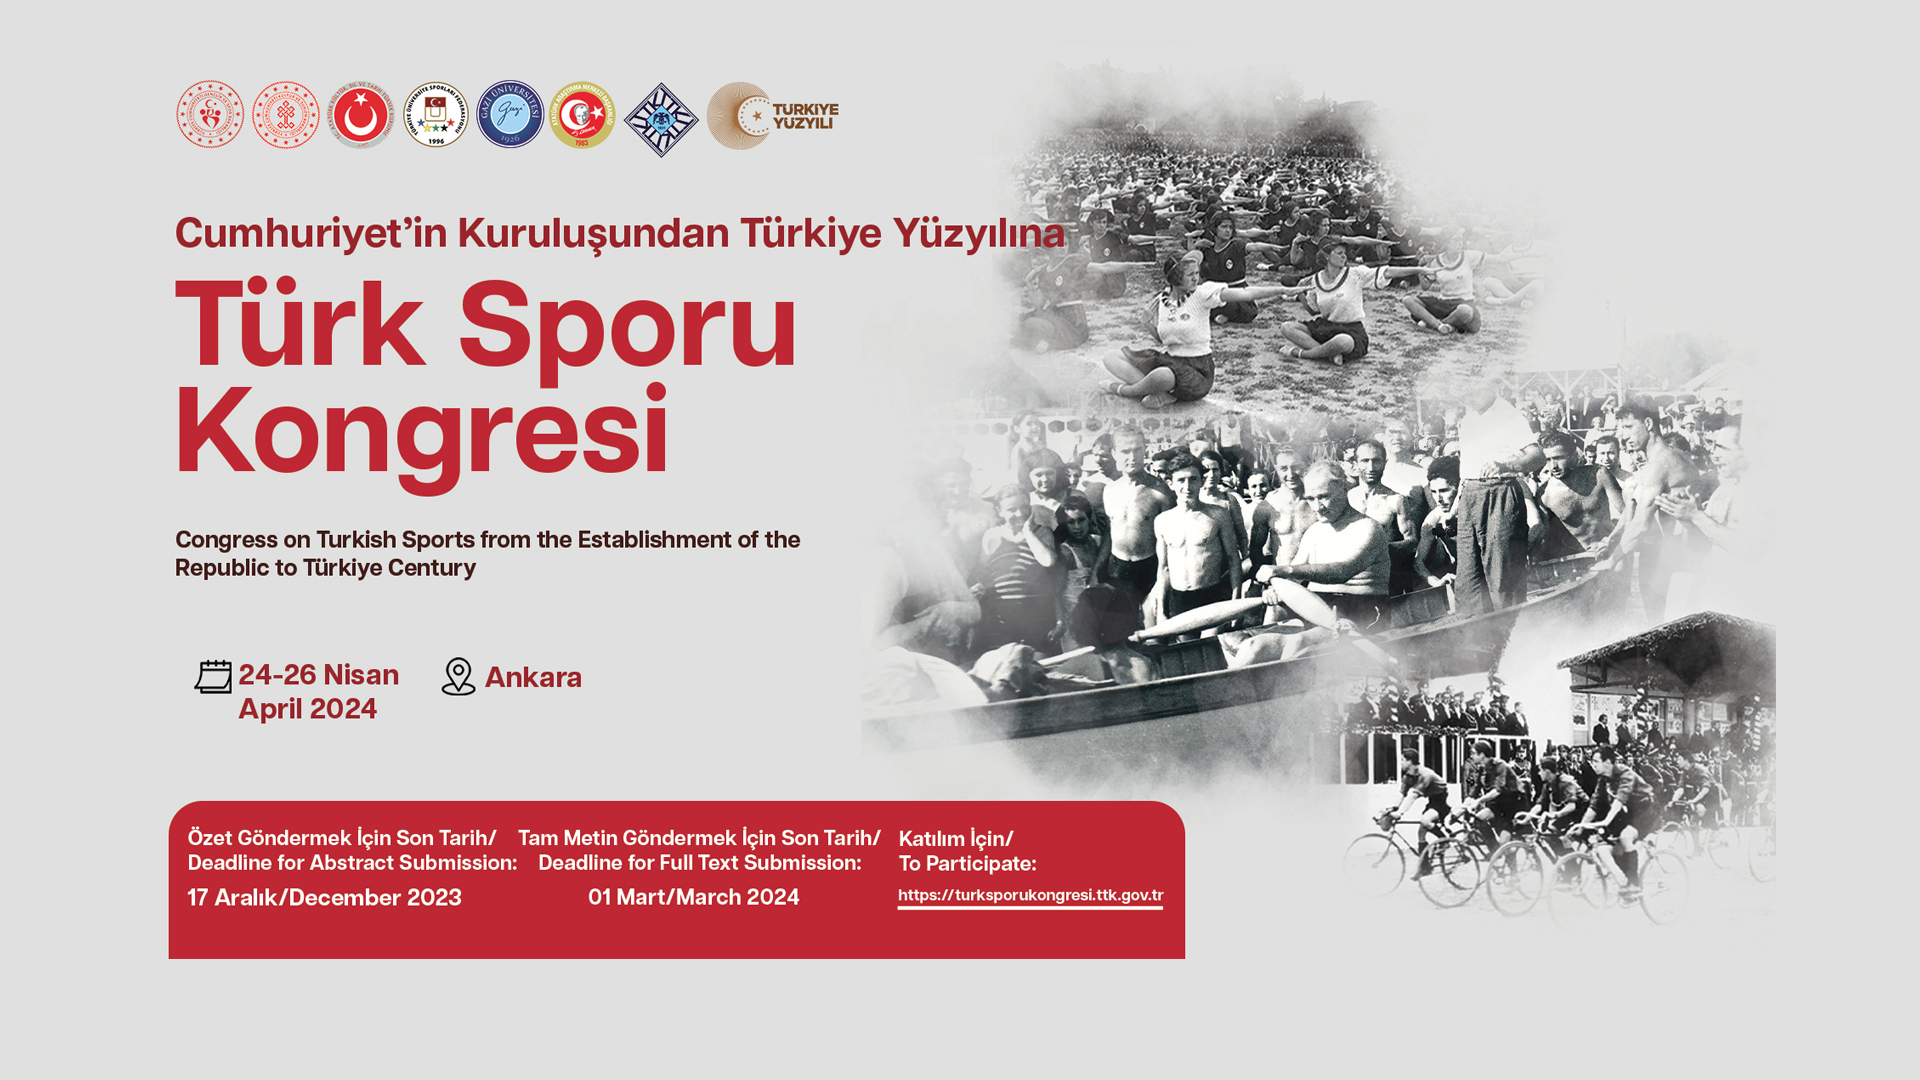  Cumhuriyet’in Kuruluşundan Türkiye Yüzyılına Türk Sporu Kongresi